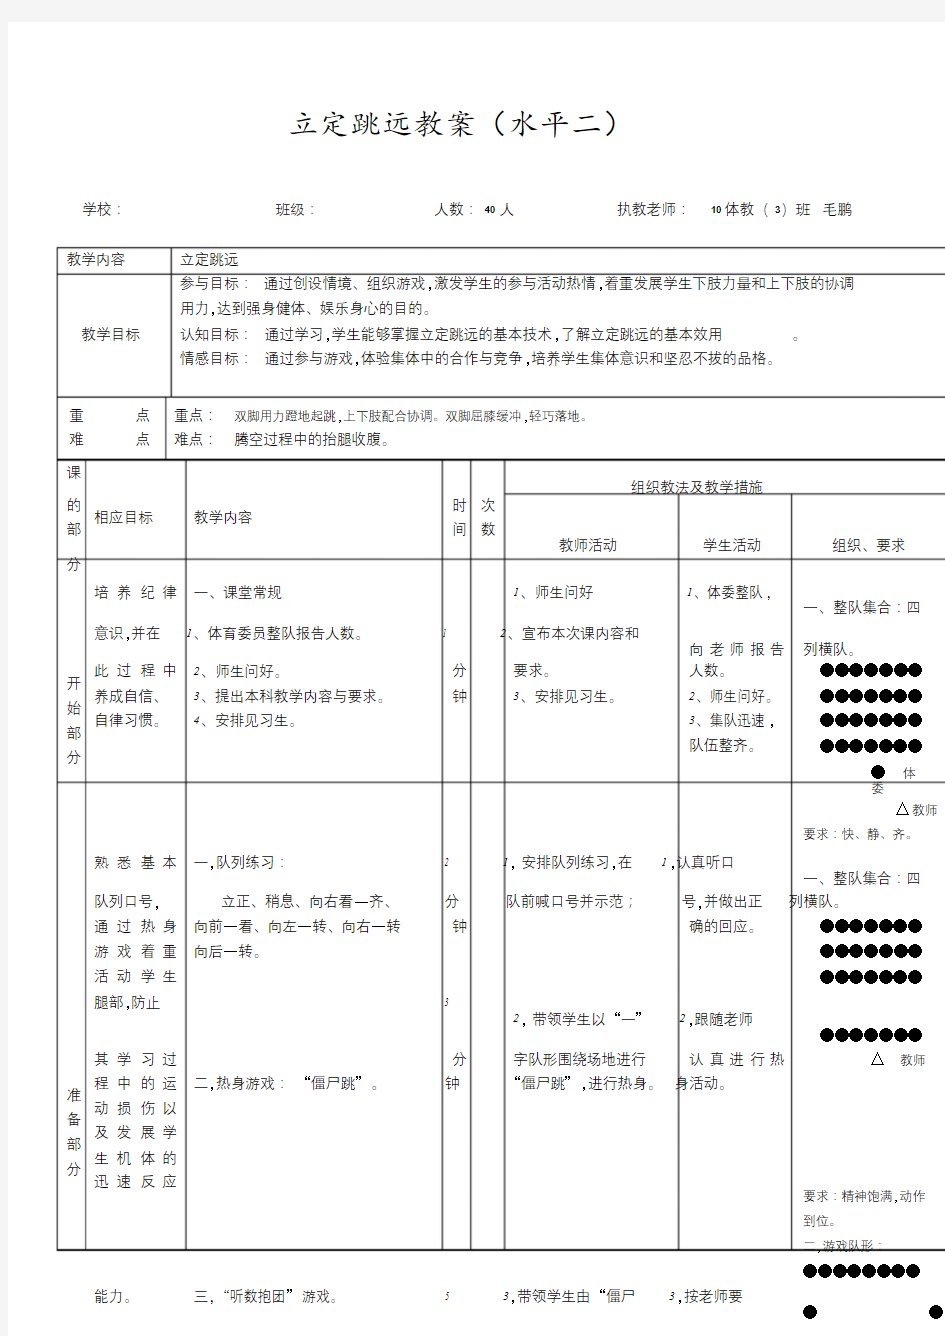 立定跳远教案(水平二)(20201223152906).doc